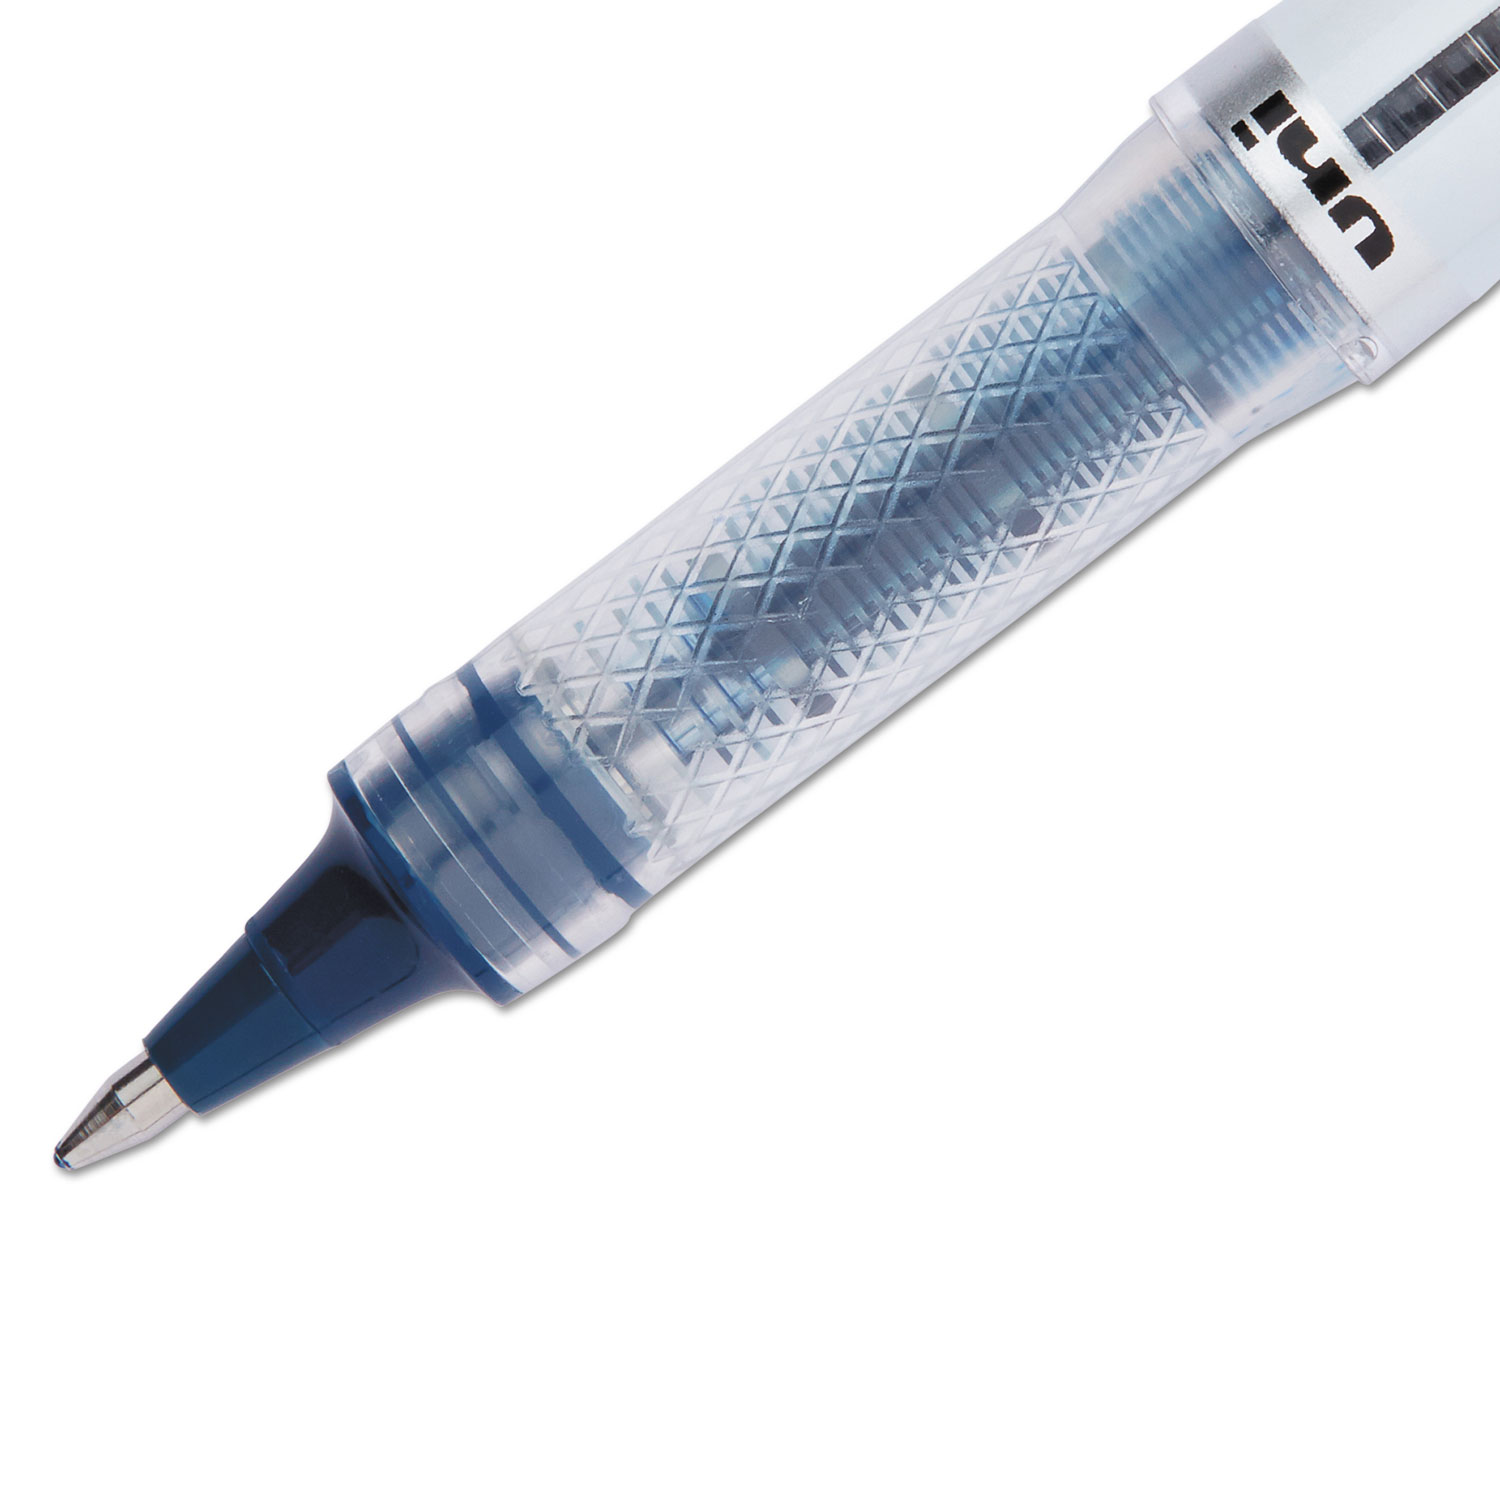 VISION ELITE Roller Ball Stick Waterproof Pen, Blue/Black Ink, Bold